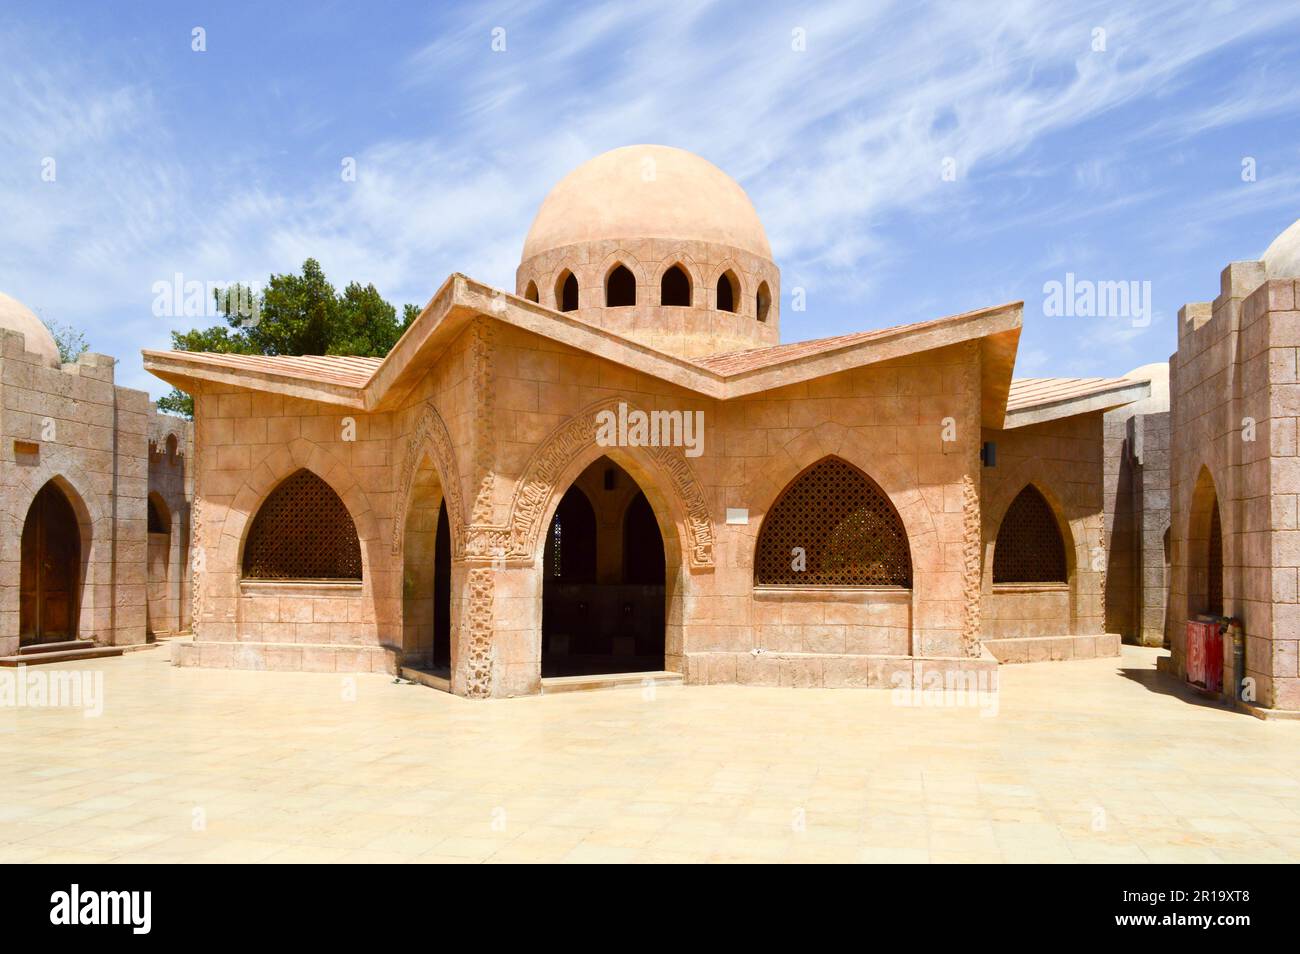 Piccole belle case arabe musulmane in pietra pulite con cupole rotonde nel deserto con palme in un paese tropicale. Foto Stock